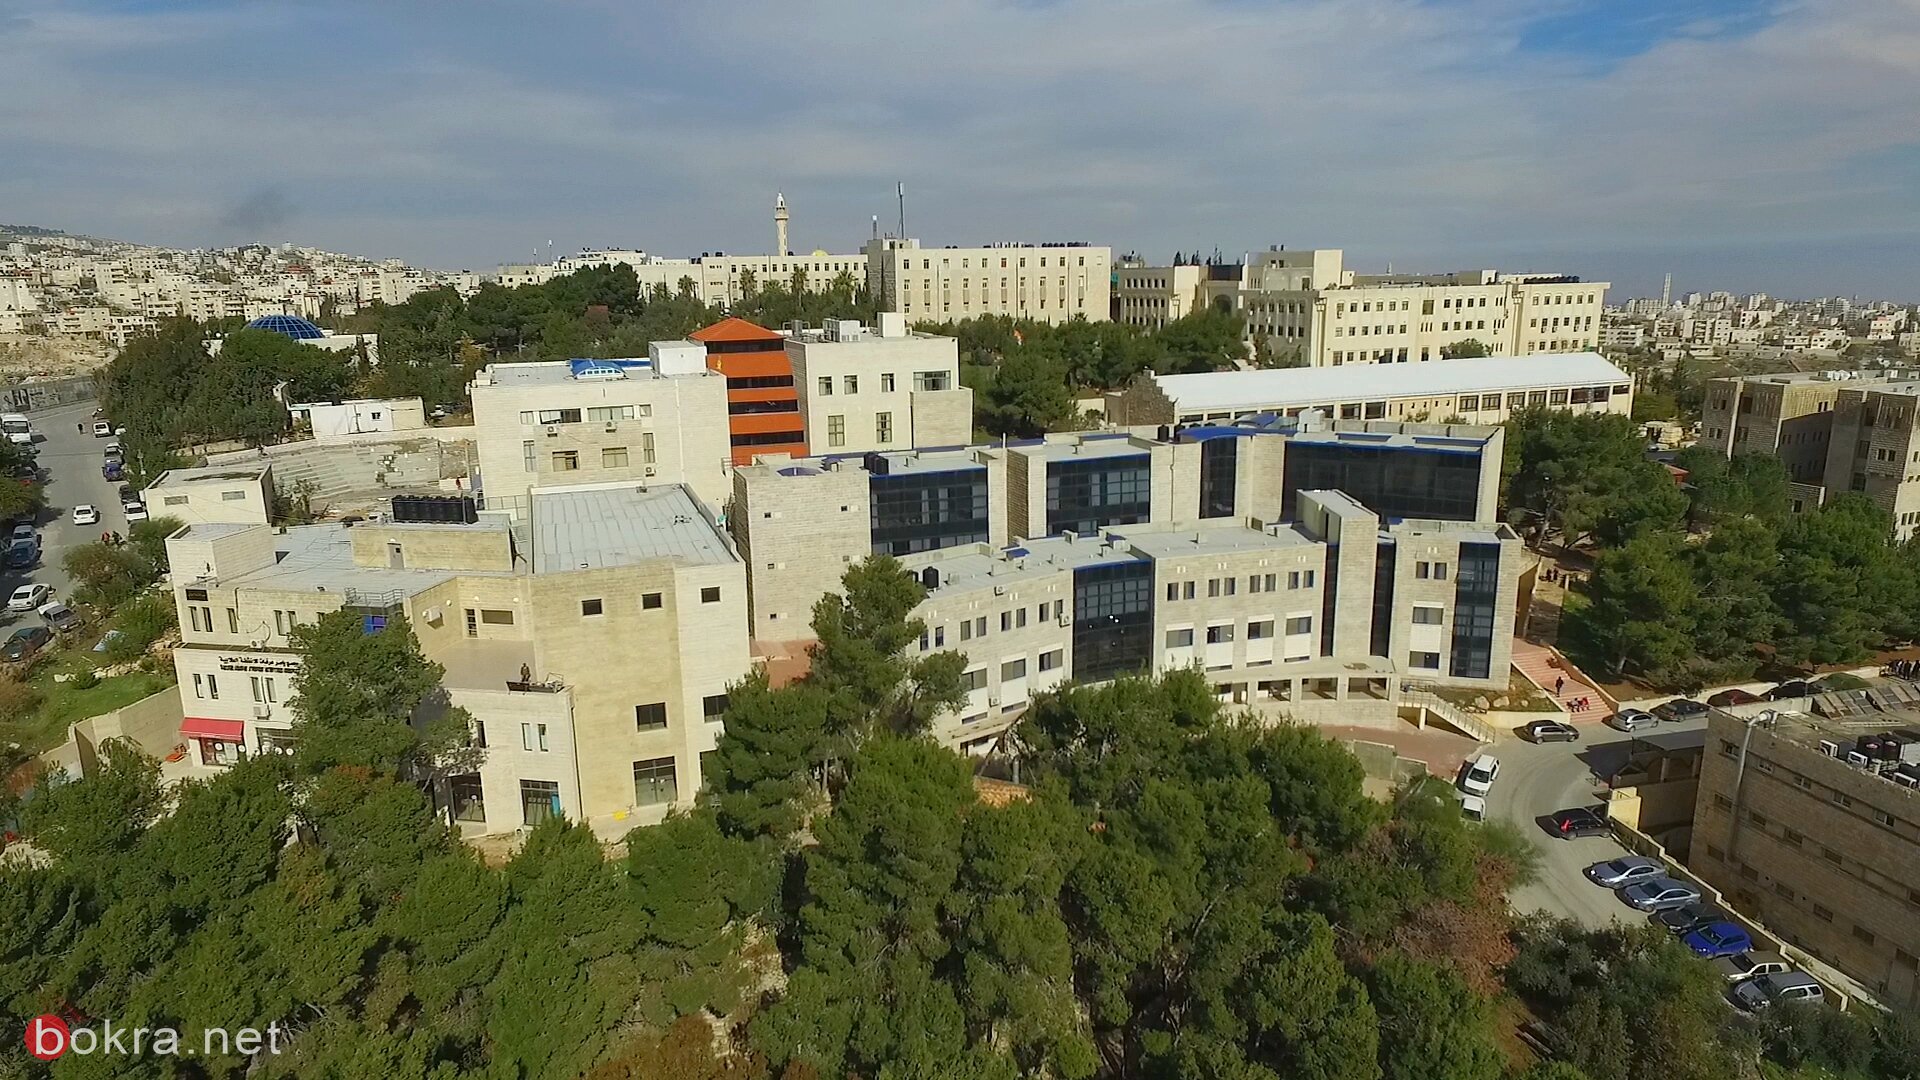 جامعة القدس الأولى فلسطينياً وفقاً لتصنيف QS العالمي للجامعات على عدة مؤشرات هامة-0